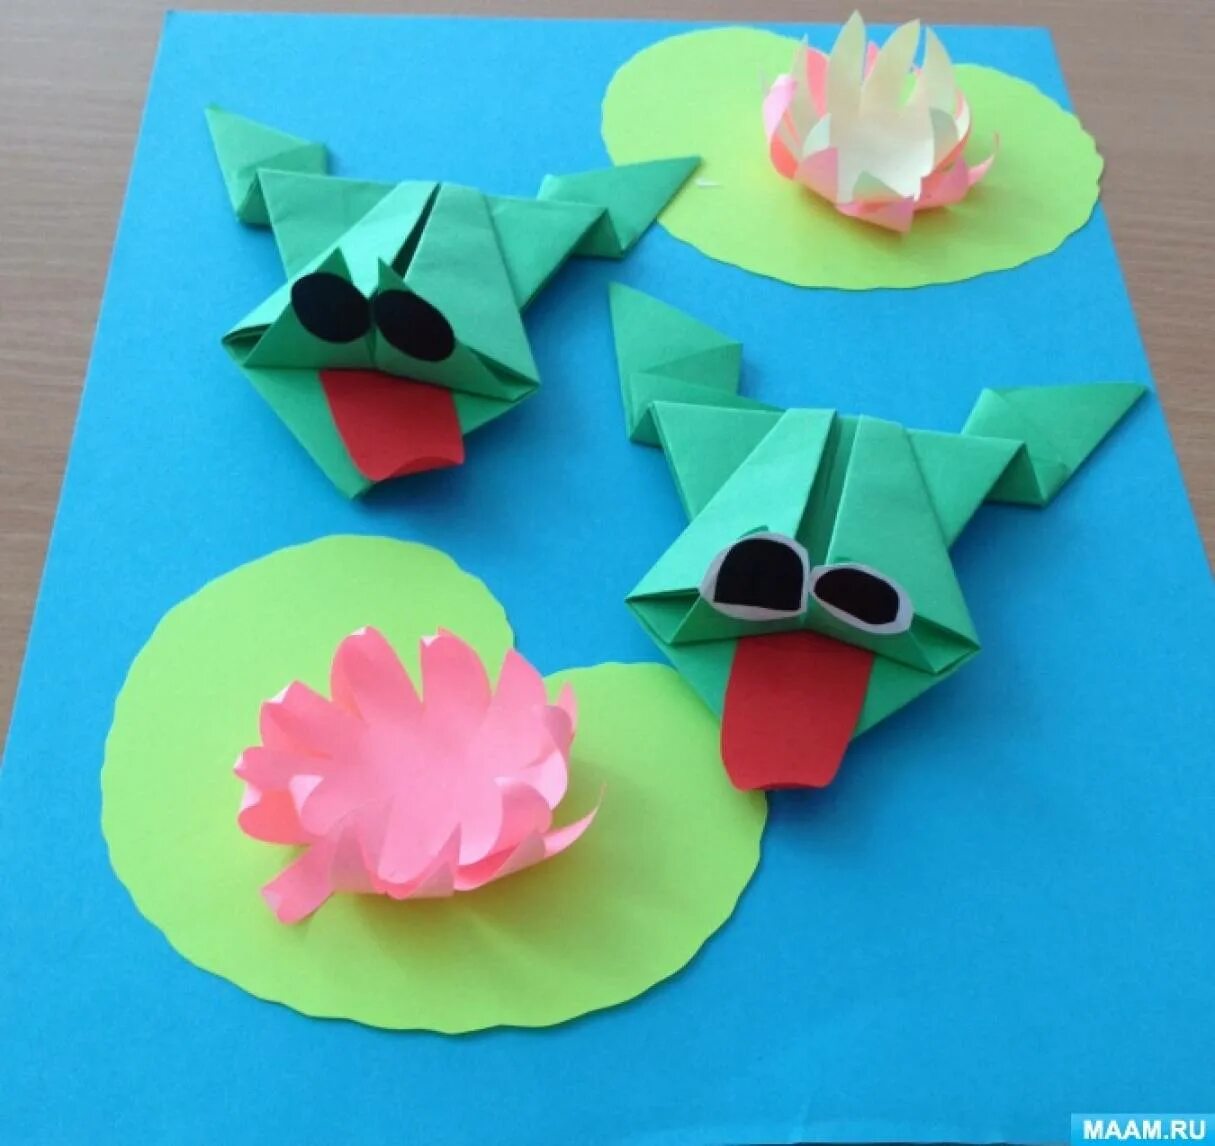 Оригами для детей. Оригами в детском саду. Аппликация оригами. Поделка в технике оригами. Оригами для детей в детском саду